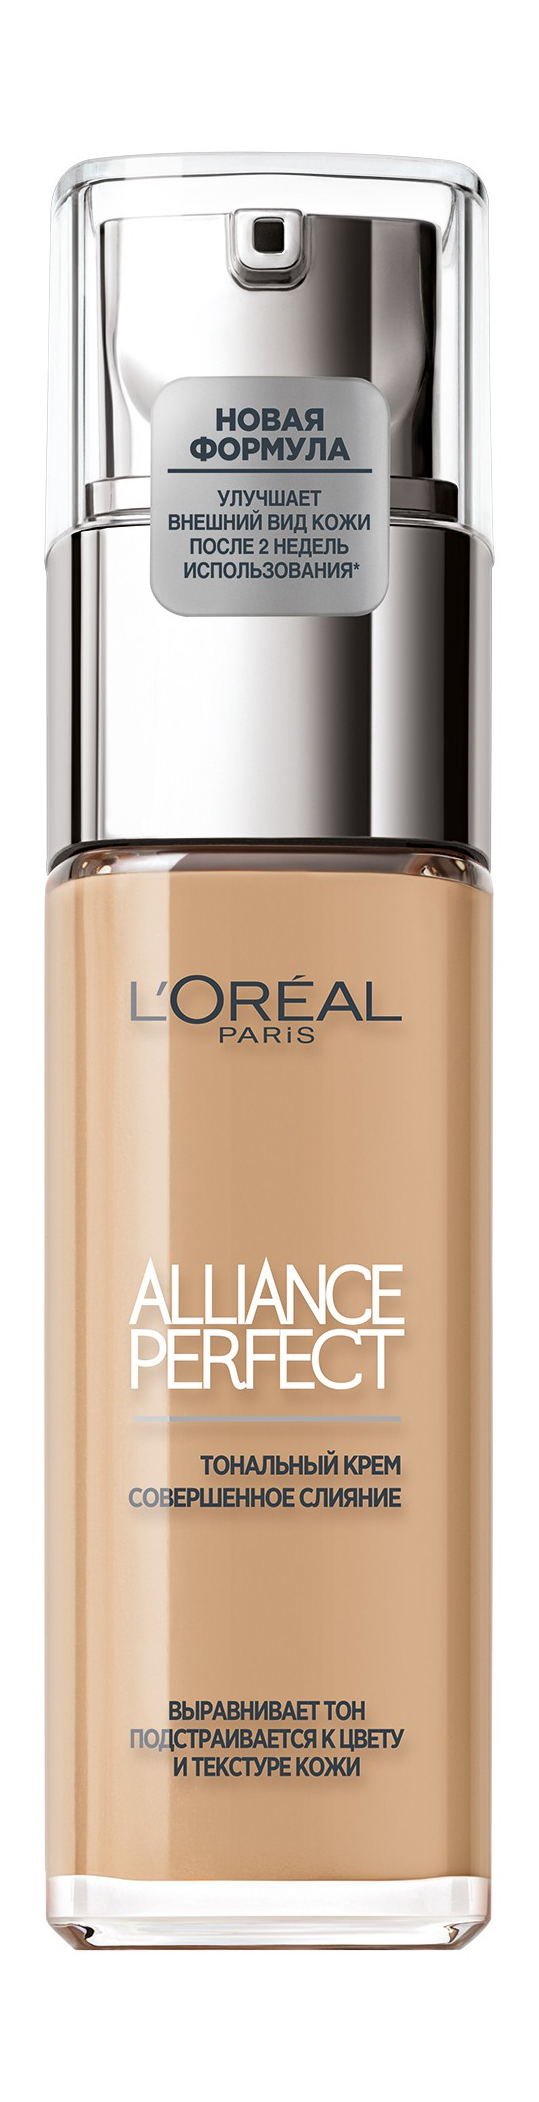 Alliance perfect l'Oreal Paris тональный крем